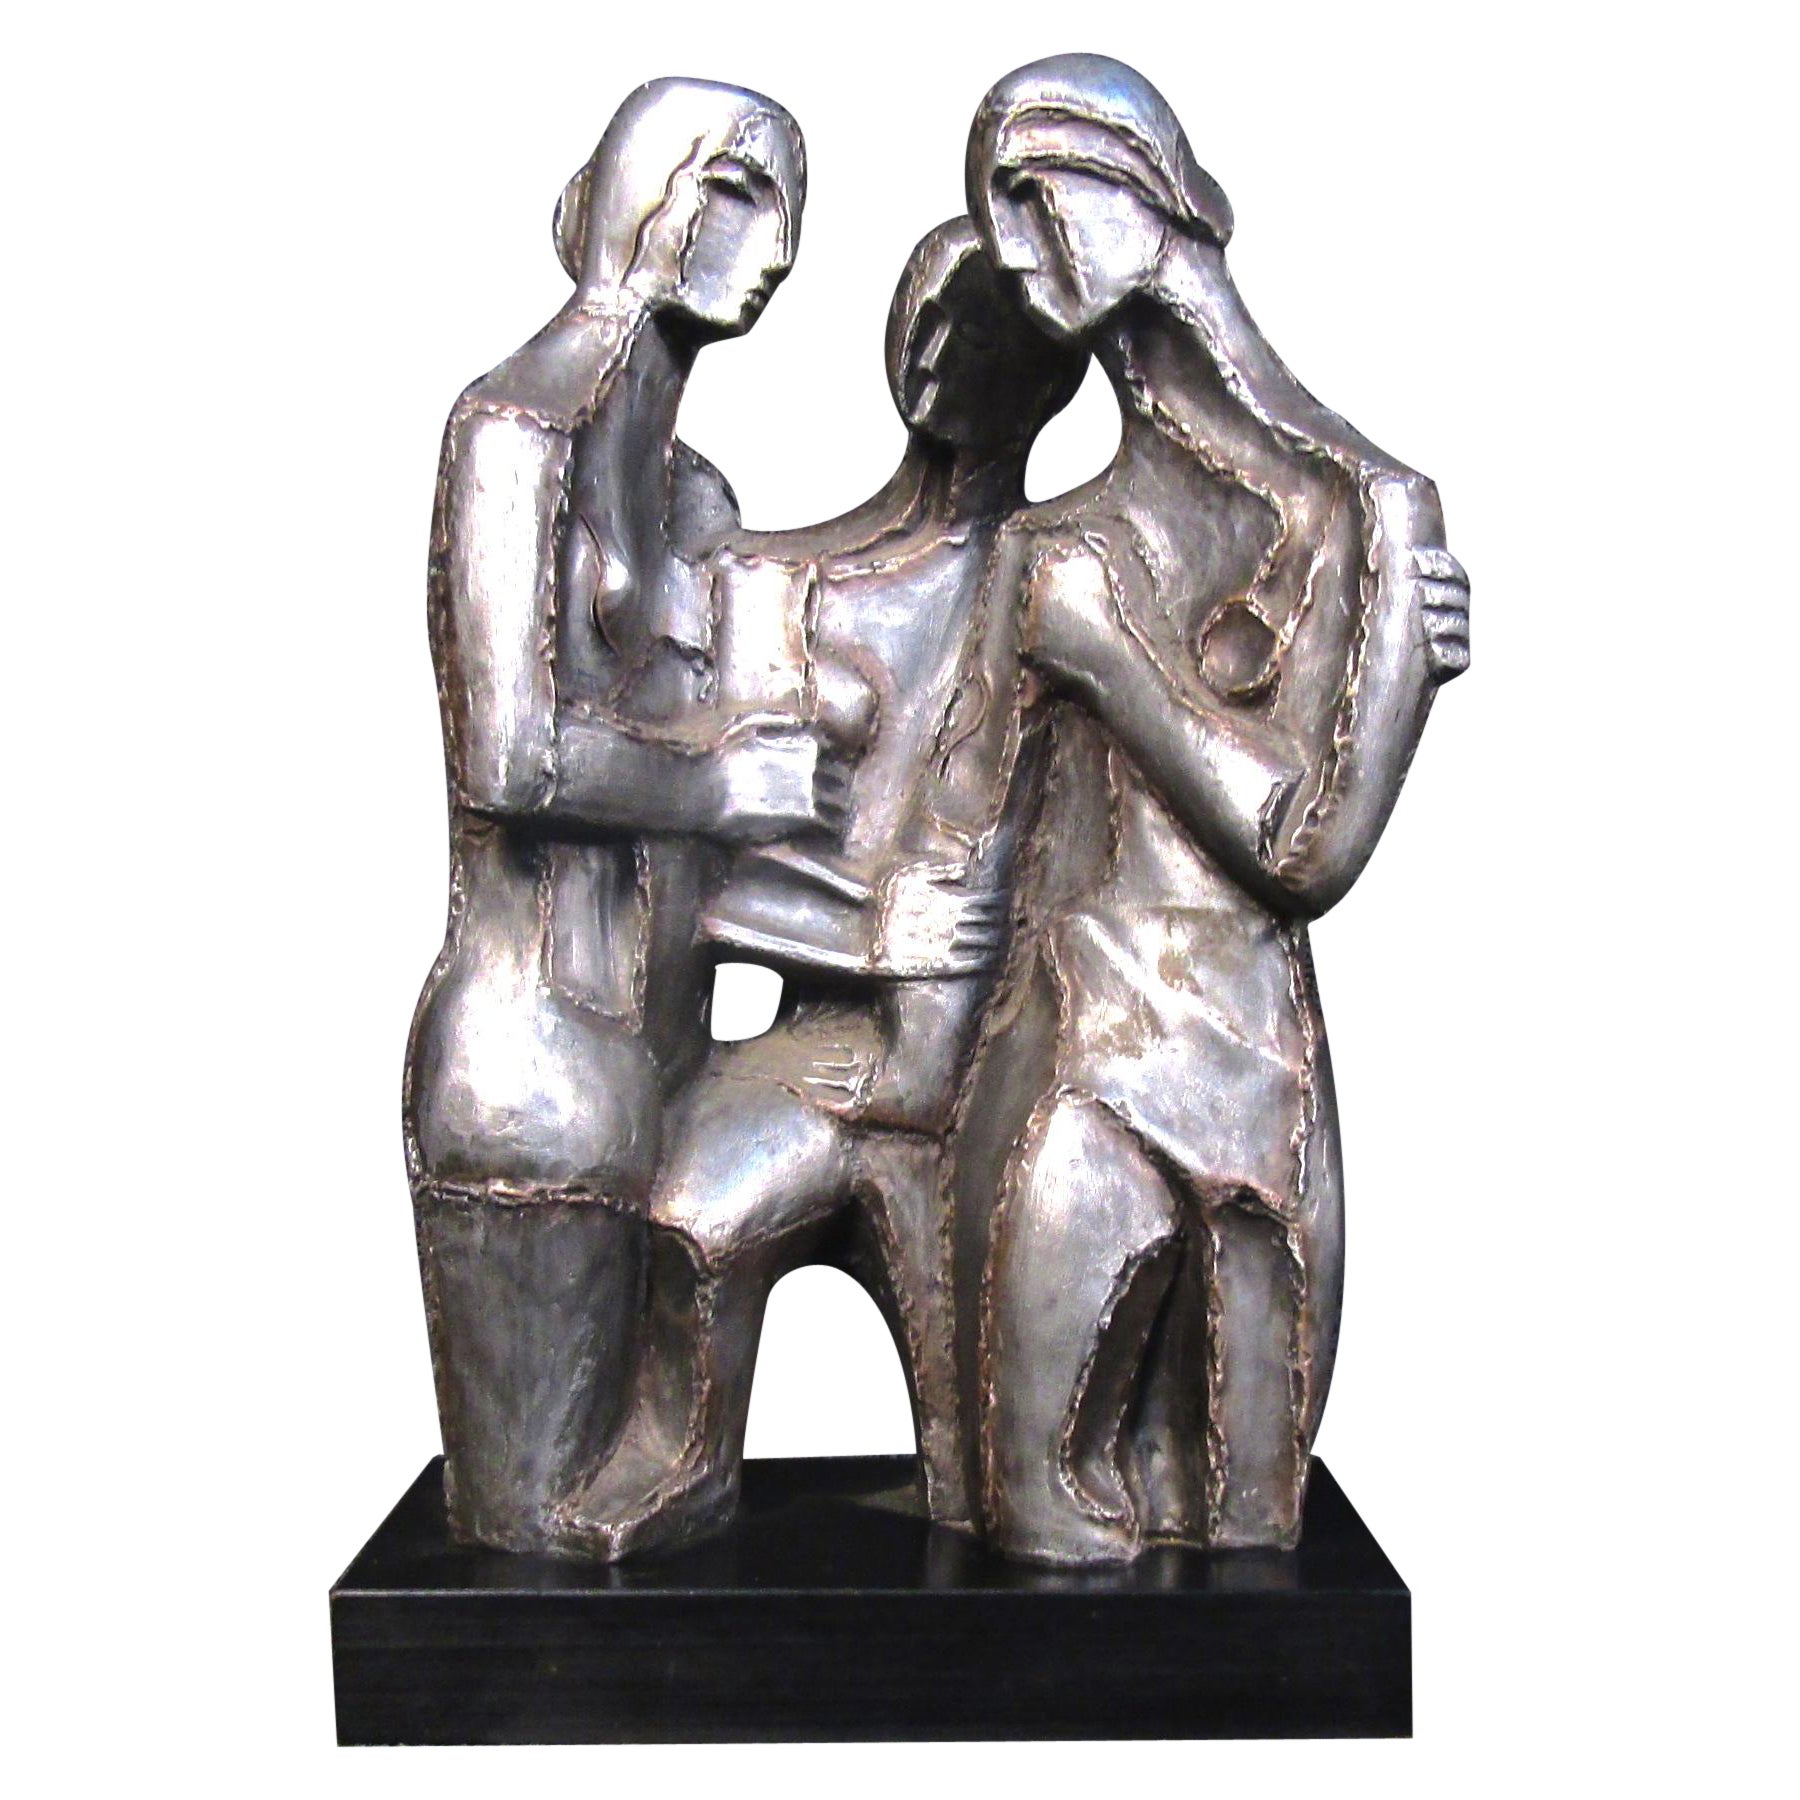 Atemberaubende Keramik-Skulptur „Three Graces“ im geschweißten Stil von Austin Prod. um 1968